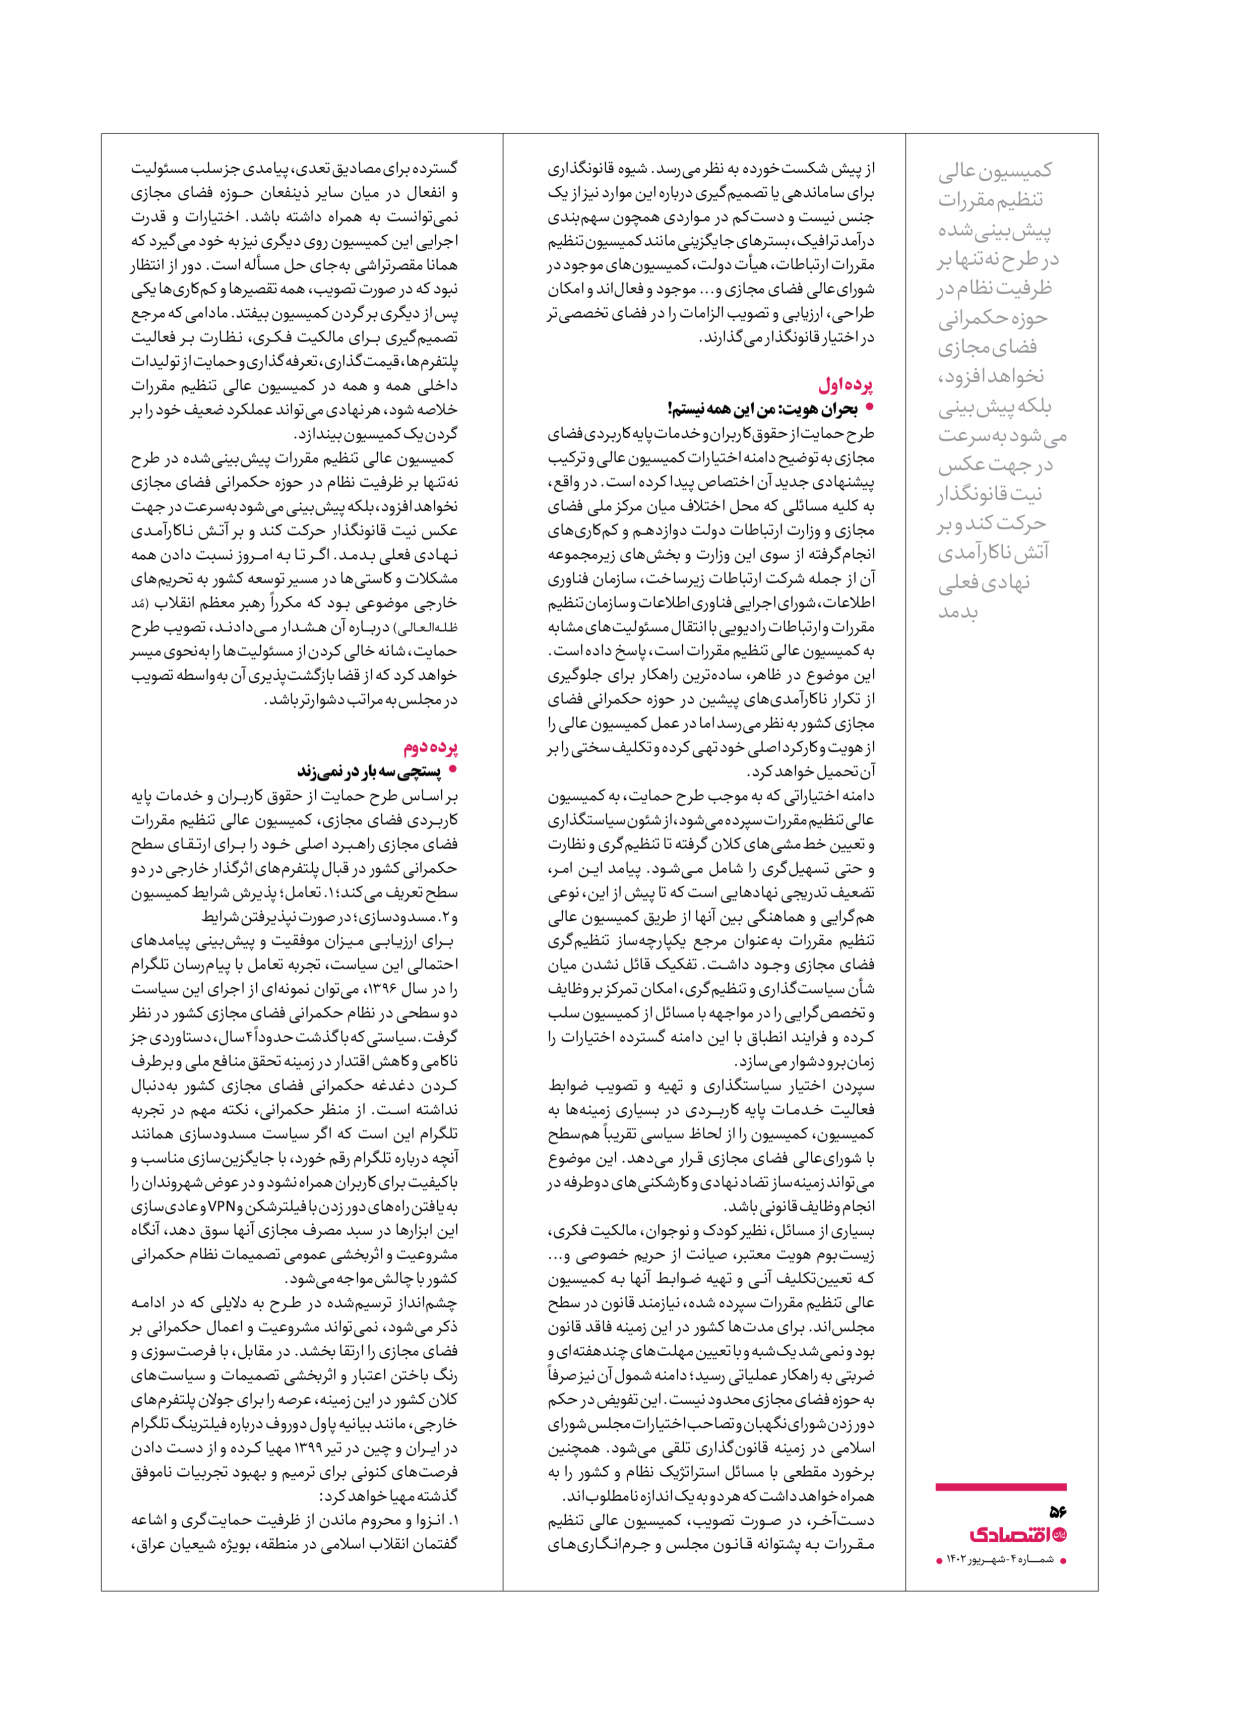 روزنامه ایران اقتصادی - ویژه نامه اقتصادی۴ - ۰۴ شهریور ۱۴۰۲ - صفحه ۵۶